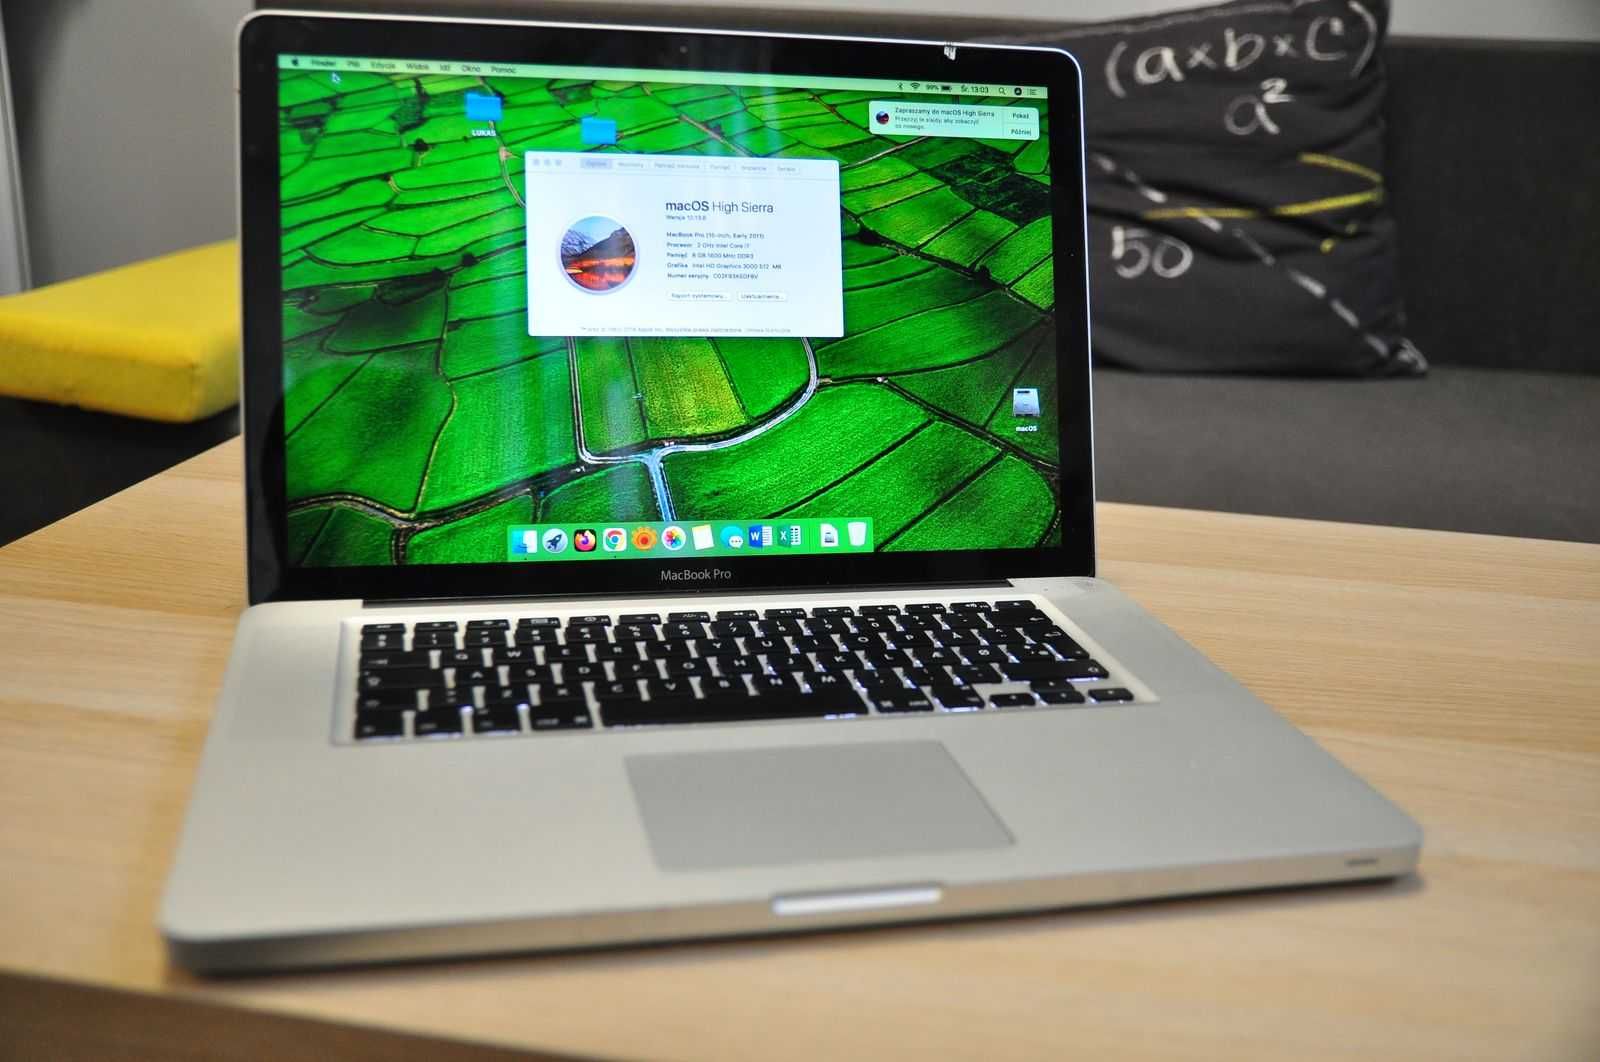 MacBook Pro 15 2011   Intel i7  8x up 2.9 GHz   8gb ram (16gb max)